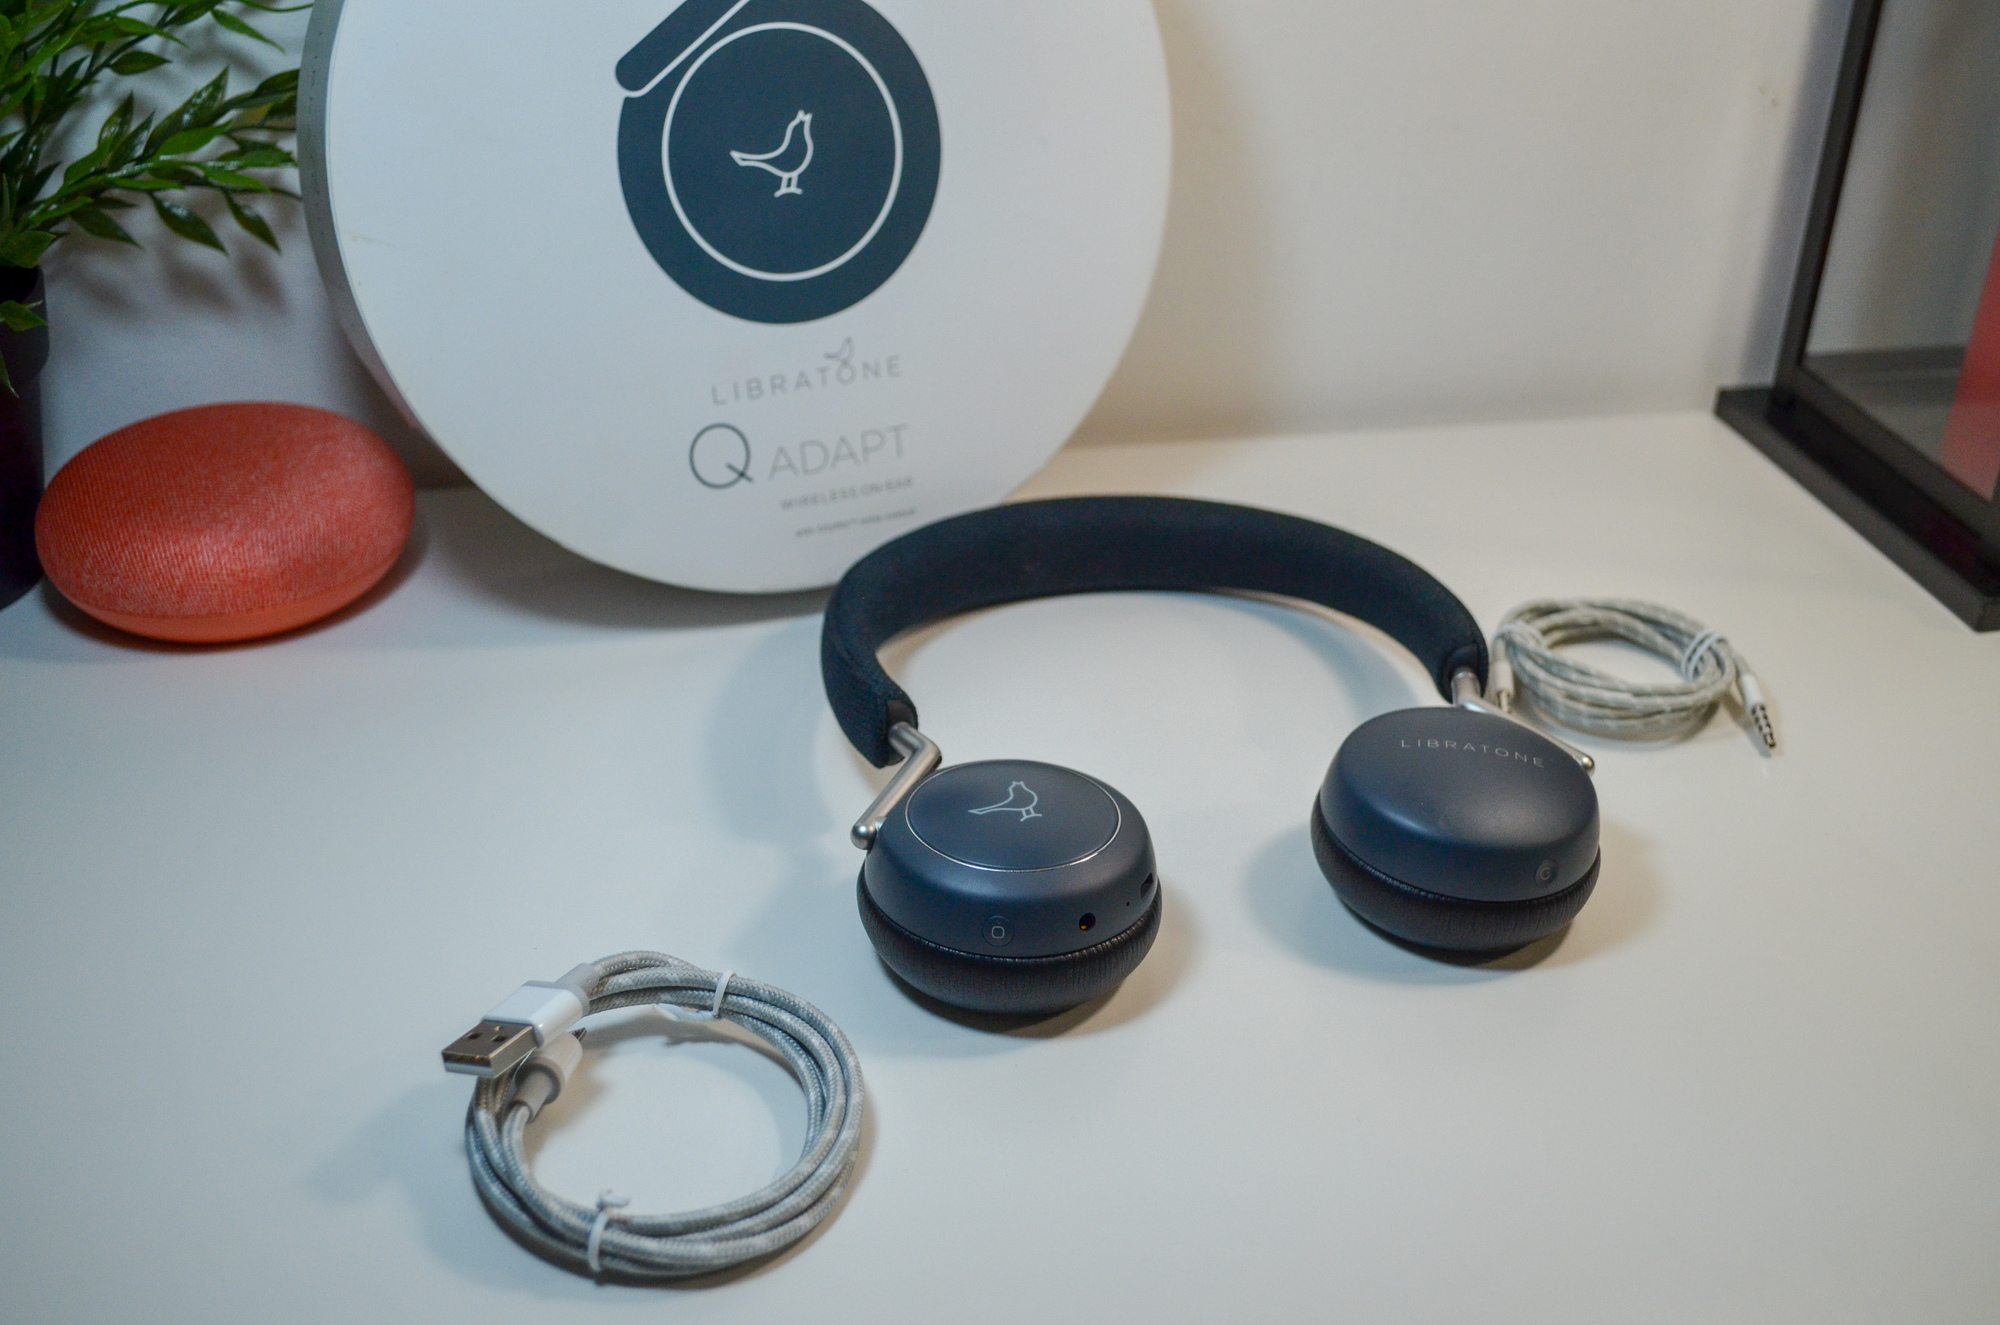 Libratone DSC 0018 1 Test – Libratone Q Adapt On-Ear : Un casque de ville sans grande prétention audio